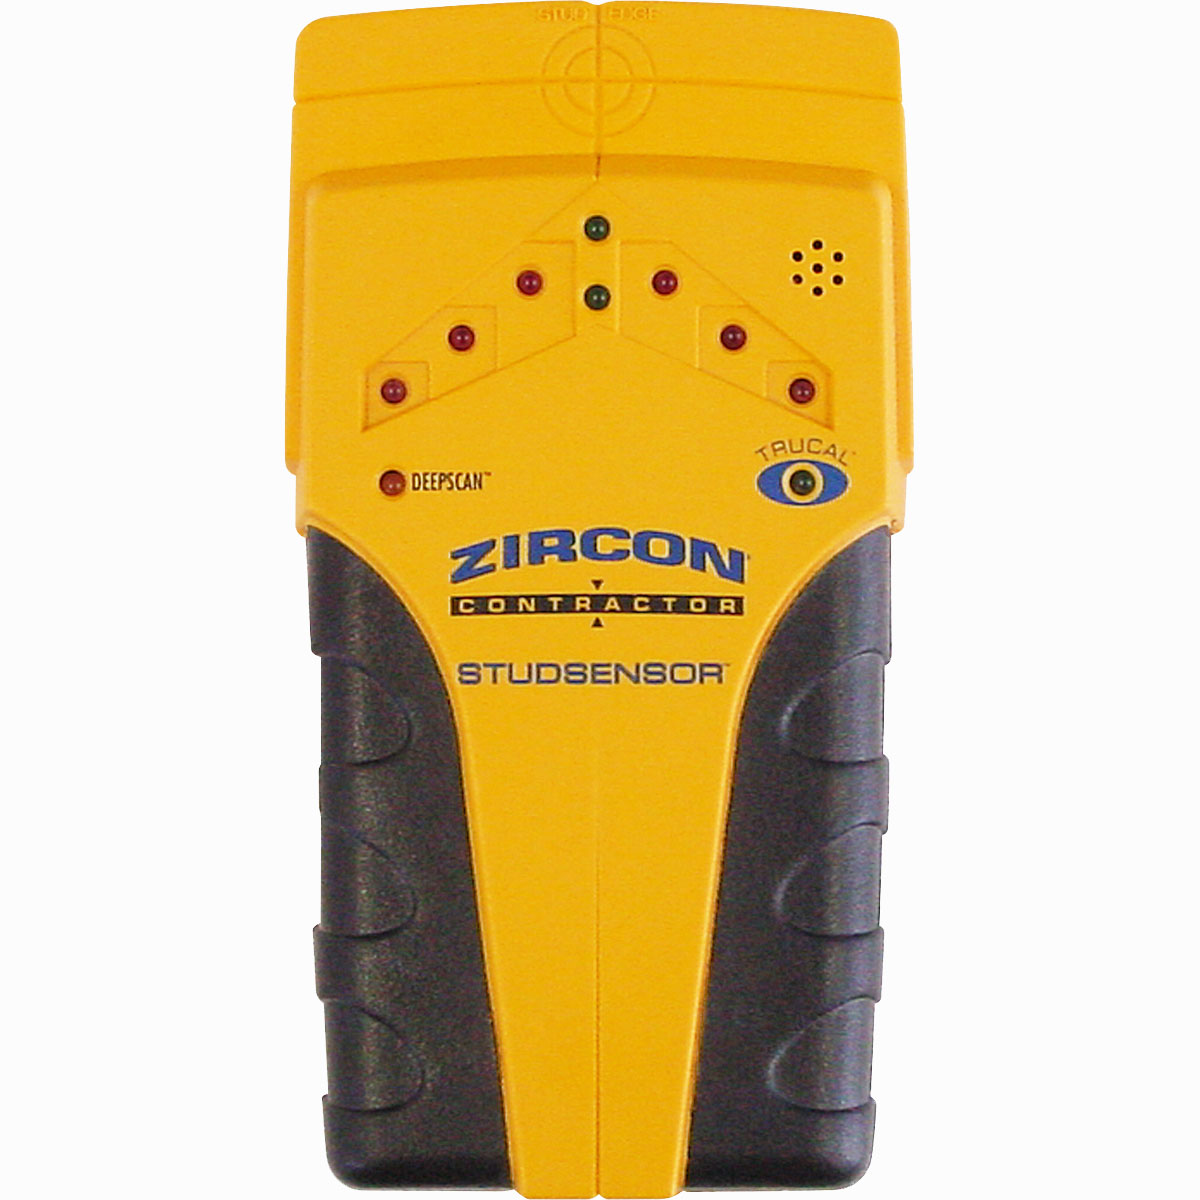 Zircon StudSensor Contractor